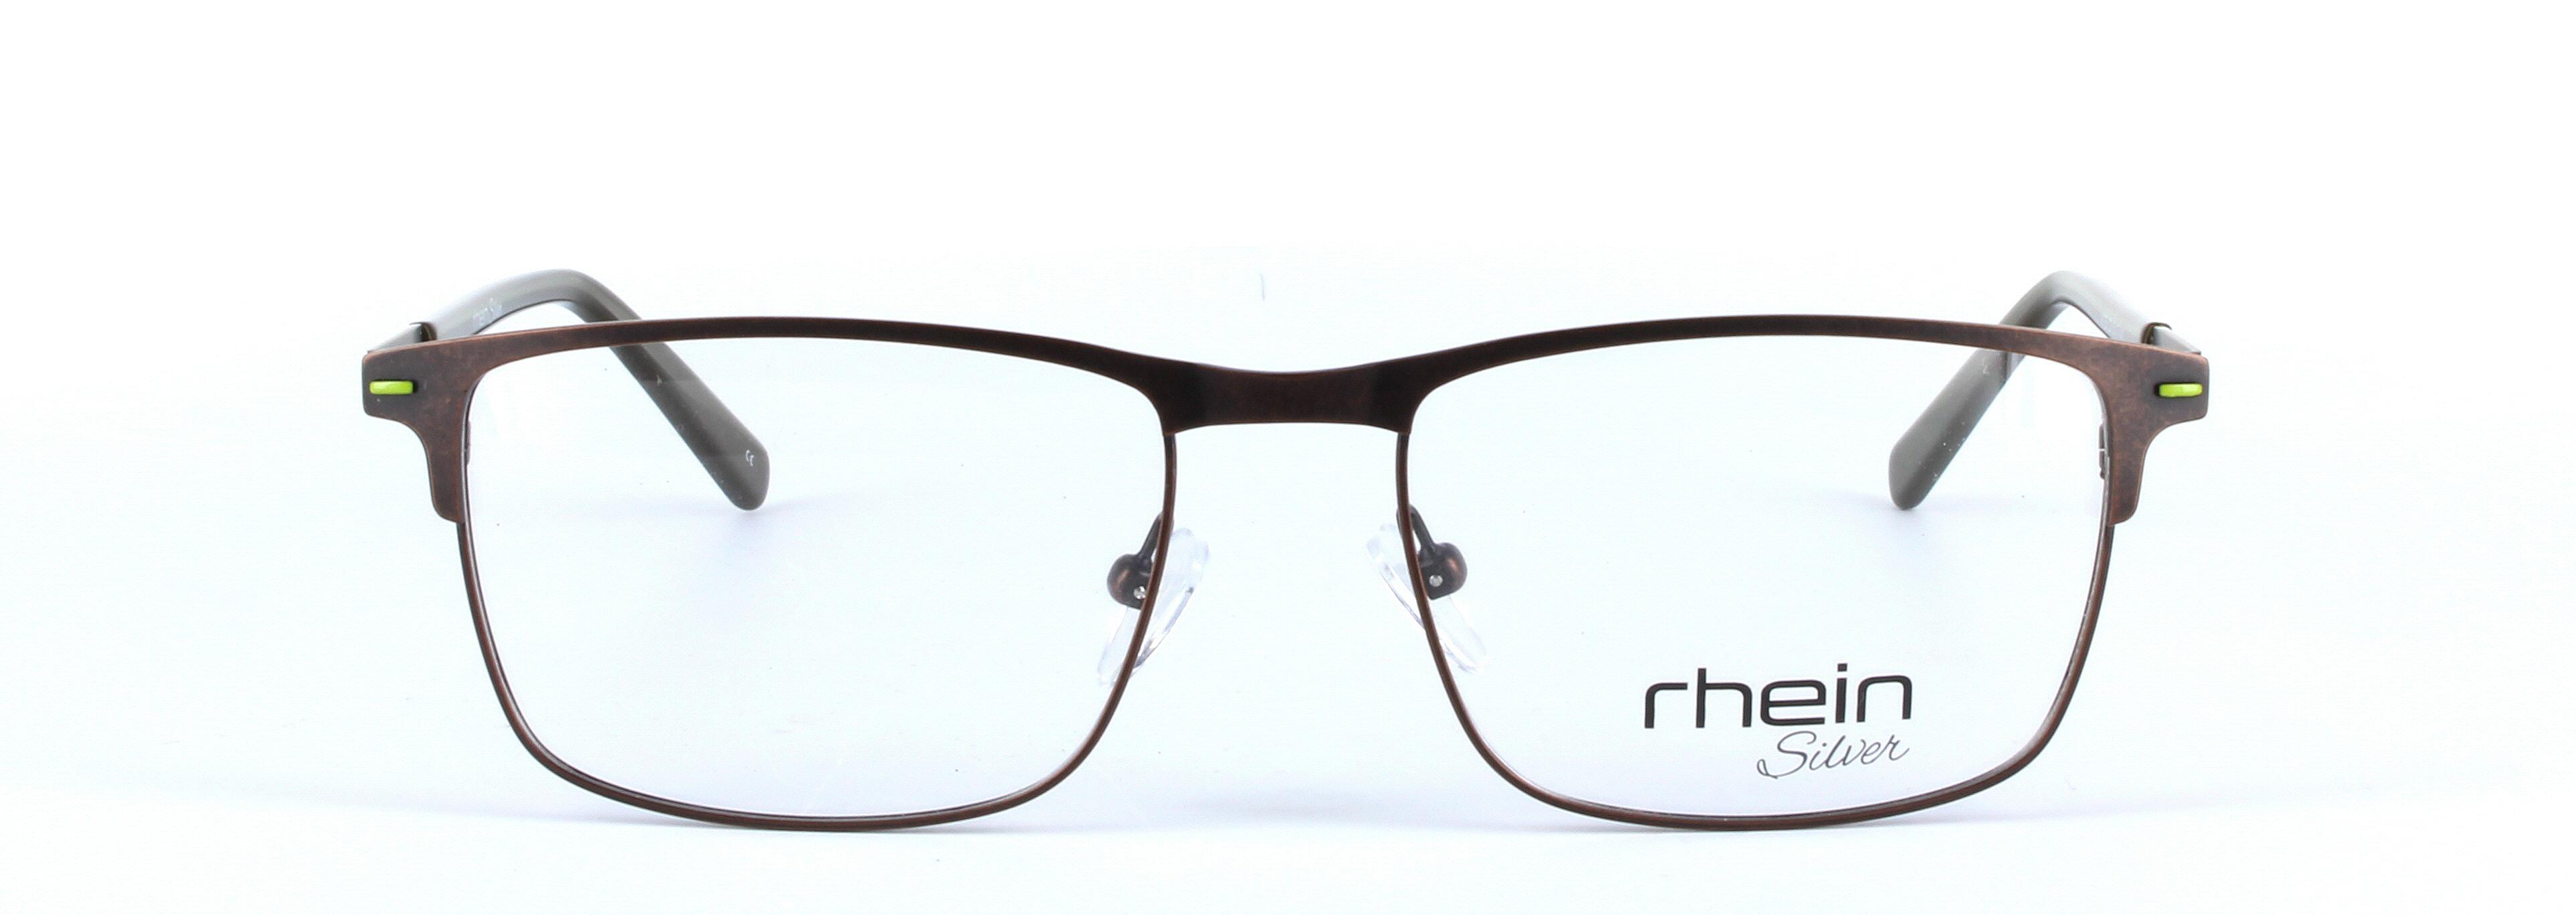 Aries Brown Full Rim Oval Metal Glasses - Image View 5